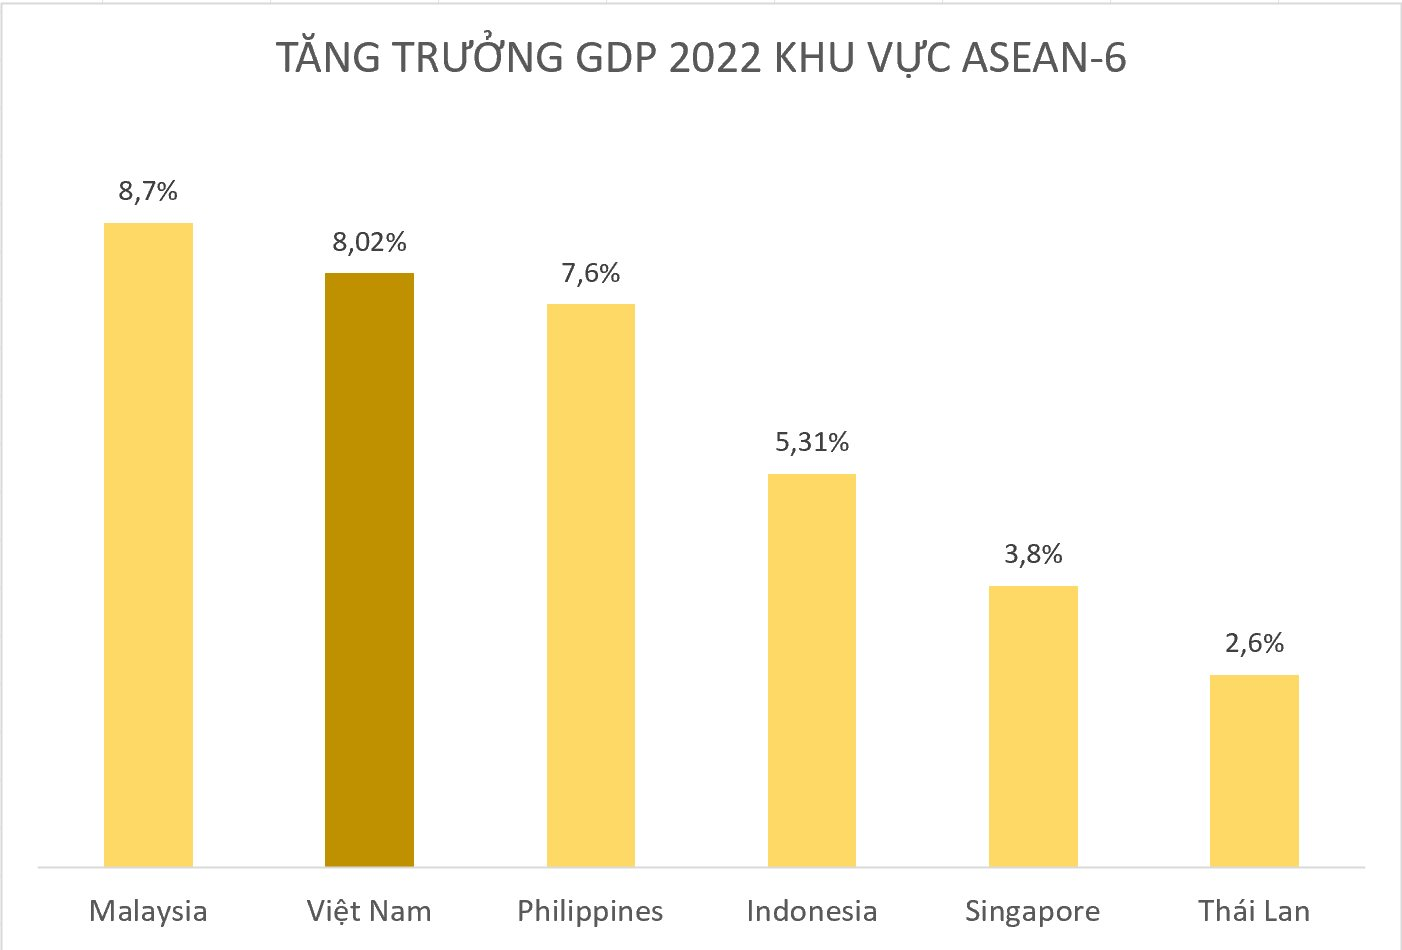 Toàn cảnh tăng trưởng GDP nhóm ASEAN-6, liệu Việt Nam có dẫn đầu? - Ảnh 2.